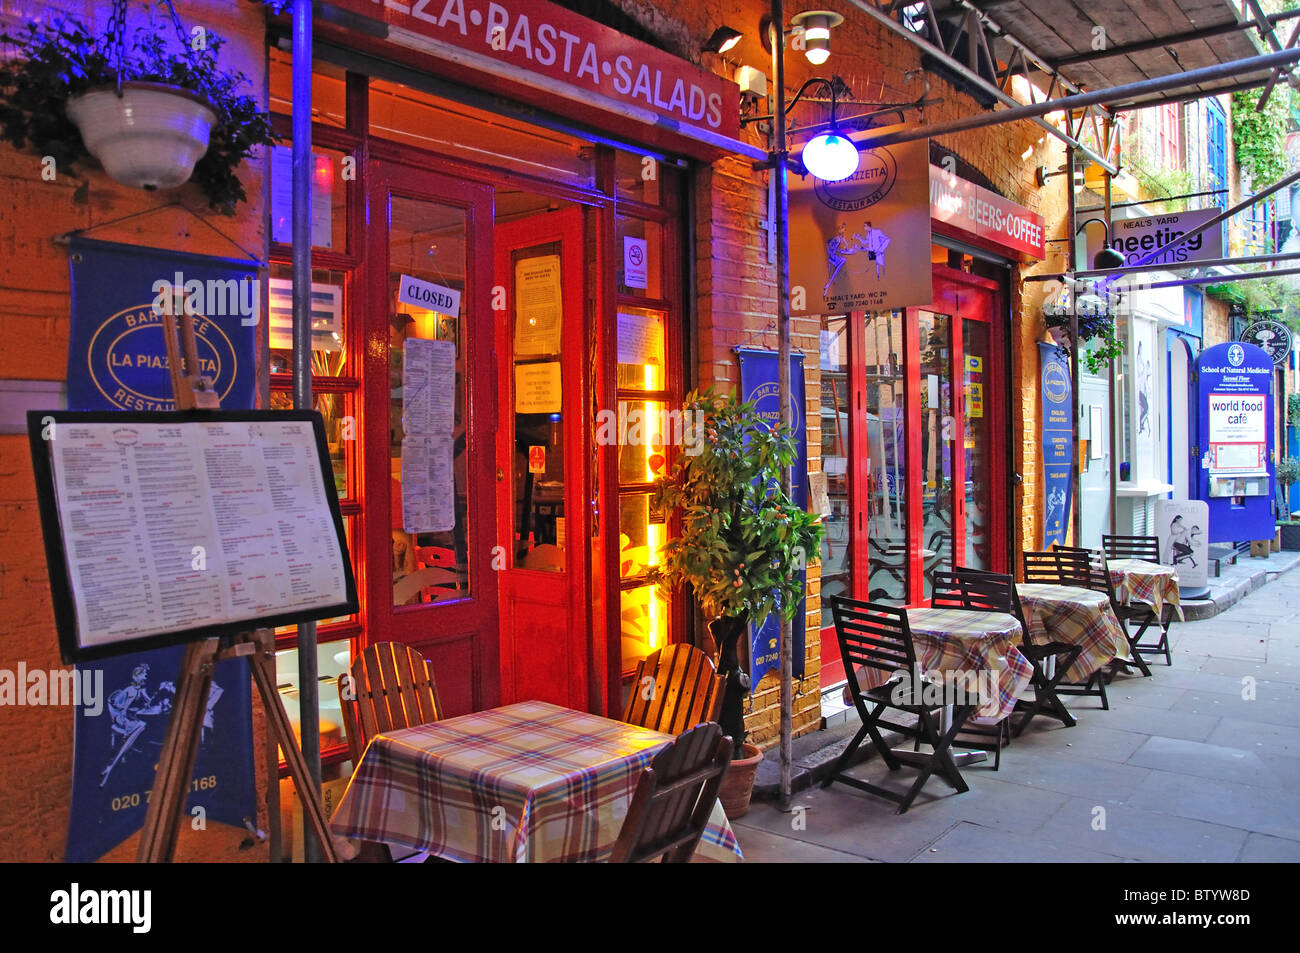 Il ristorante italiano, Neal's Yard, Covent Garden, London Borough of Camden, Greater London, England, Regno Unito Foto Stock